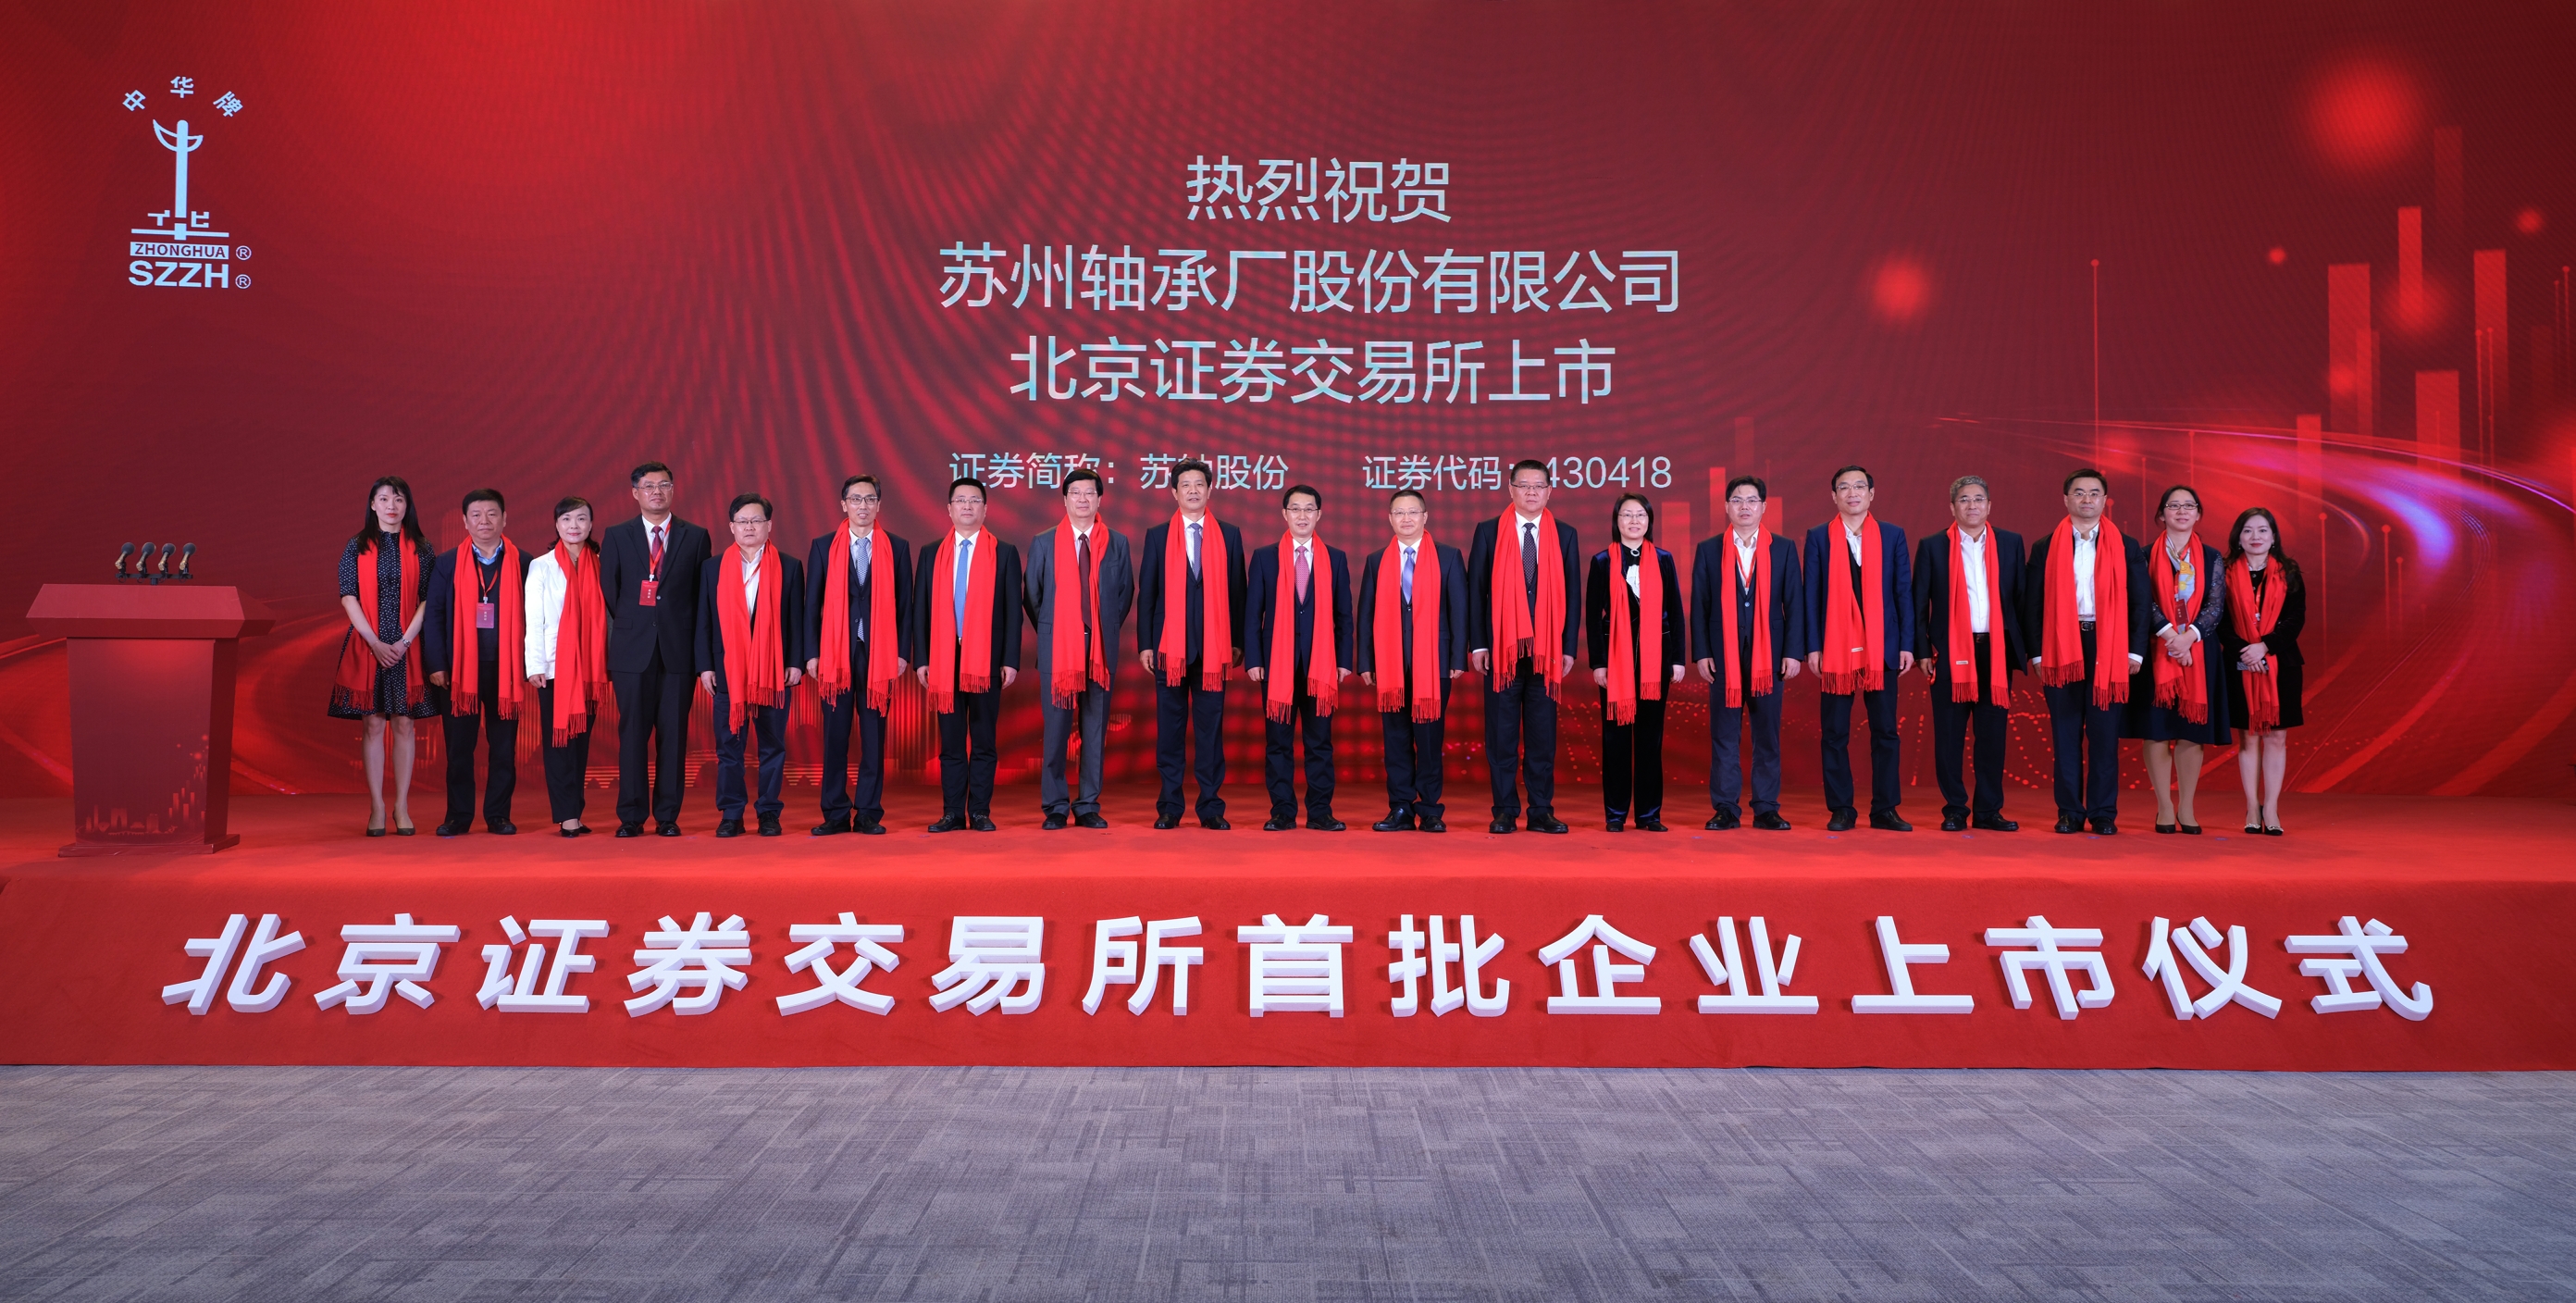 仙人掌app官网股份在北京证券交易所首批上市